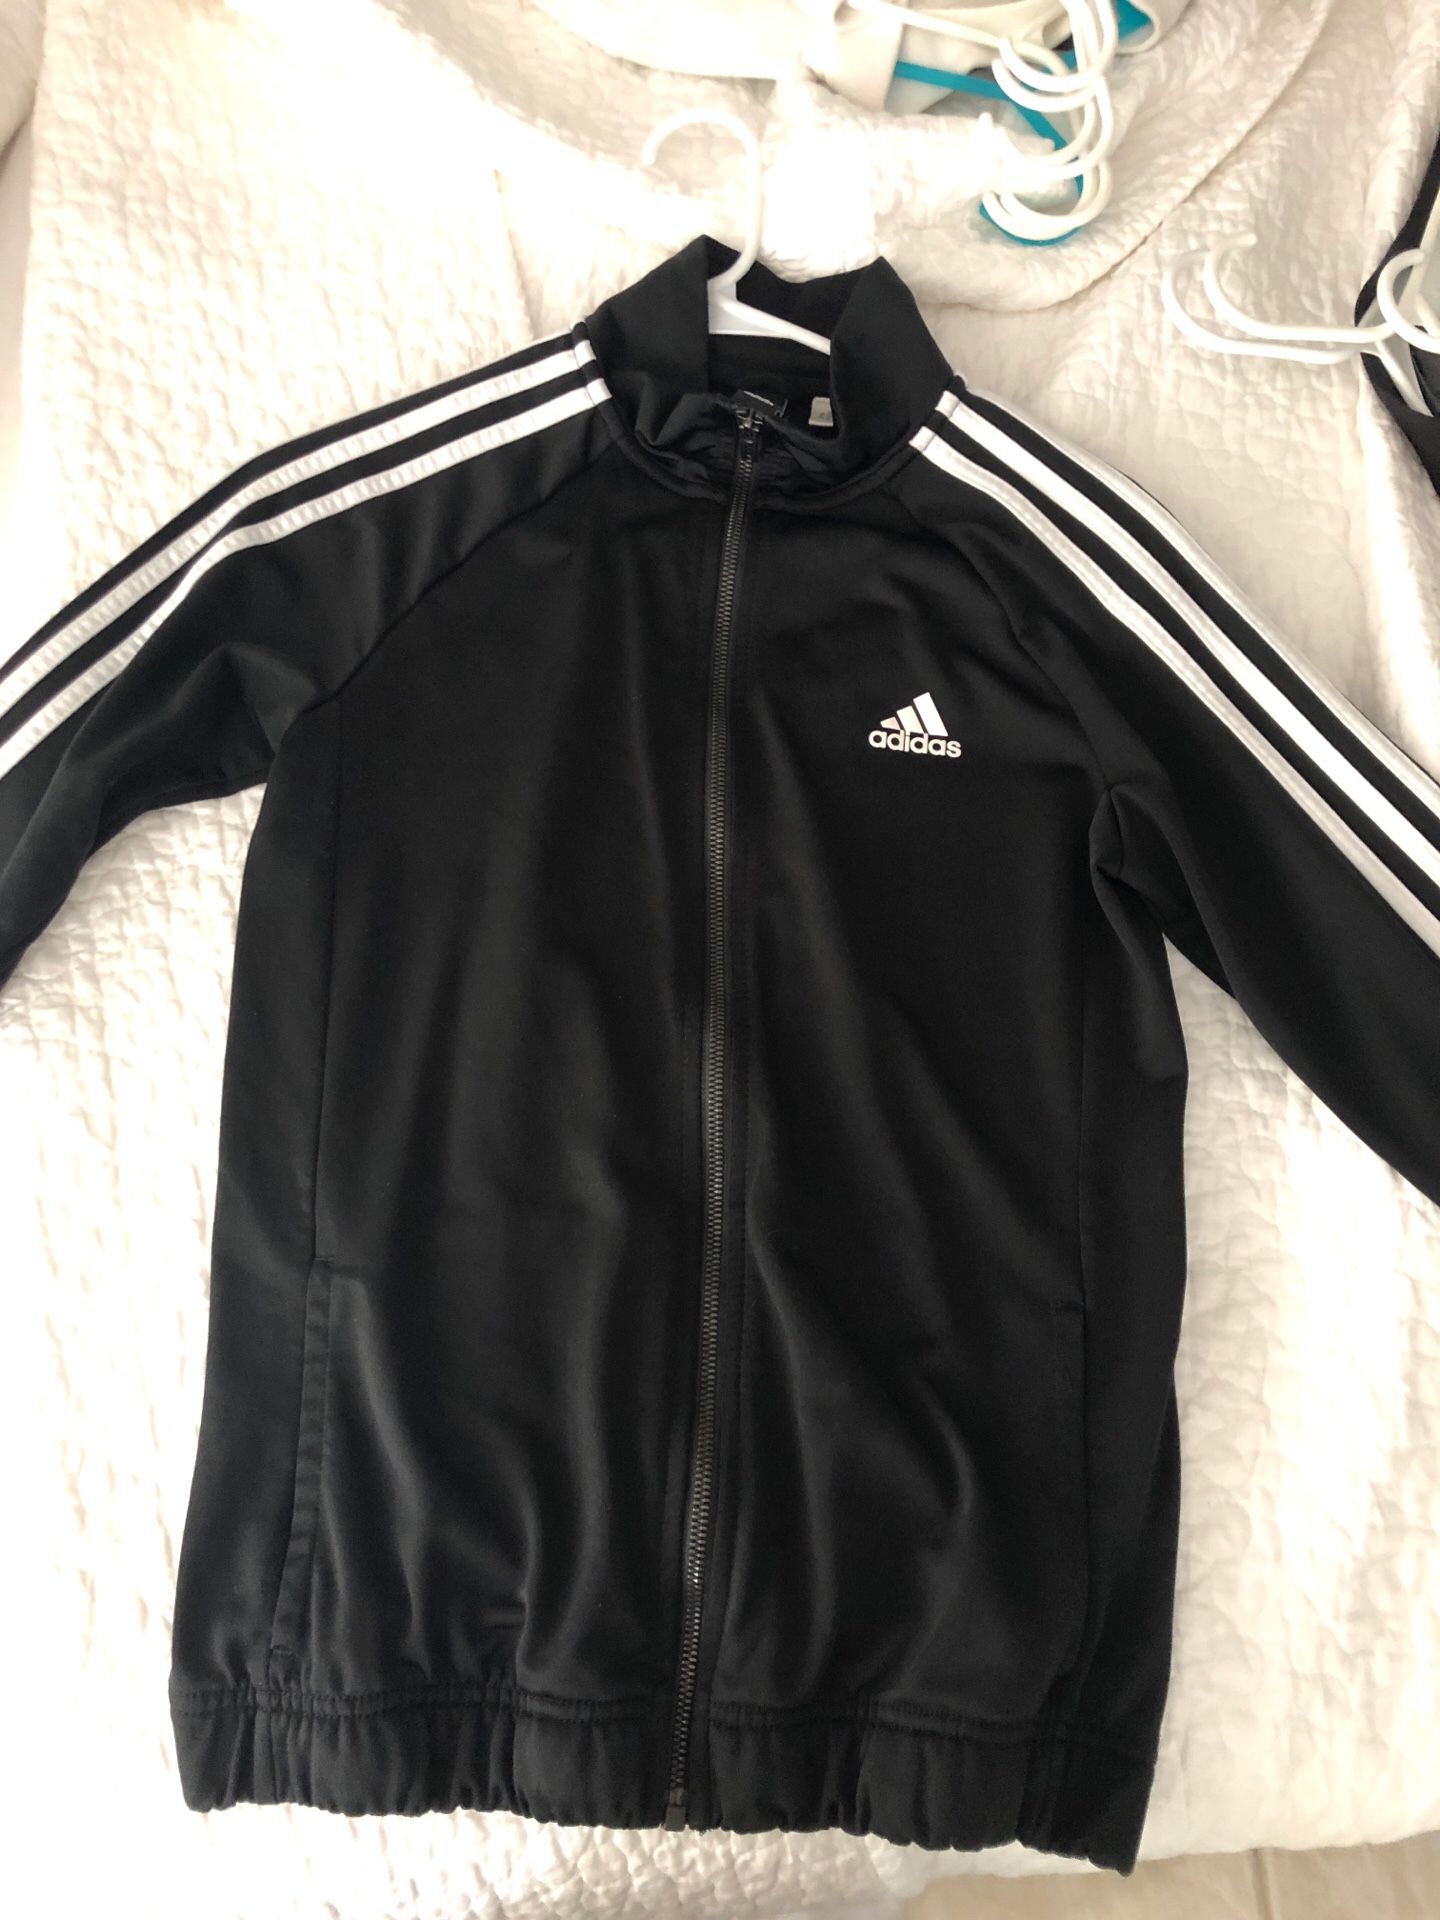 Adidas jacket women’s size 10/16